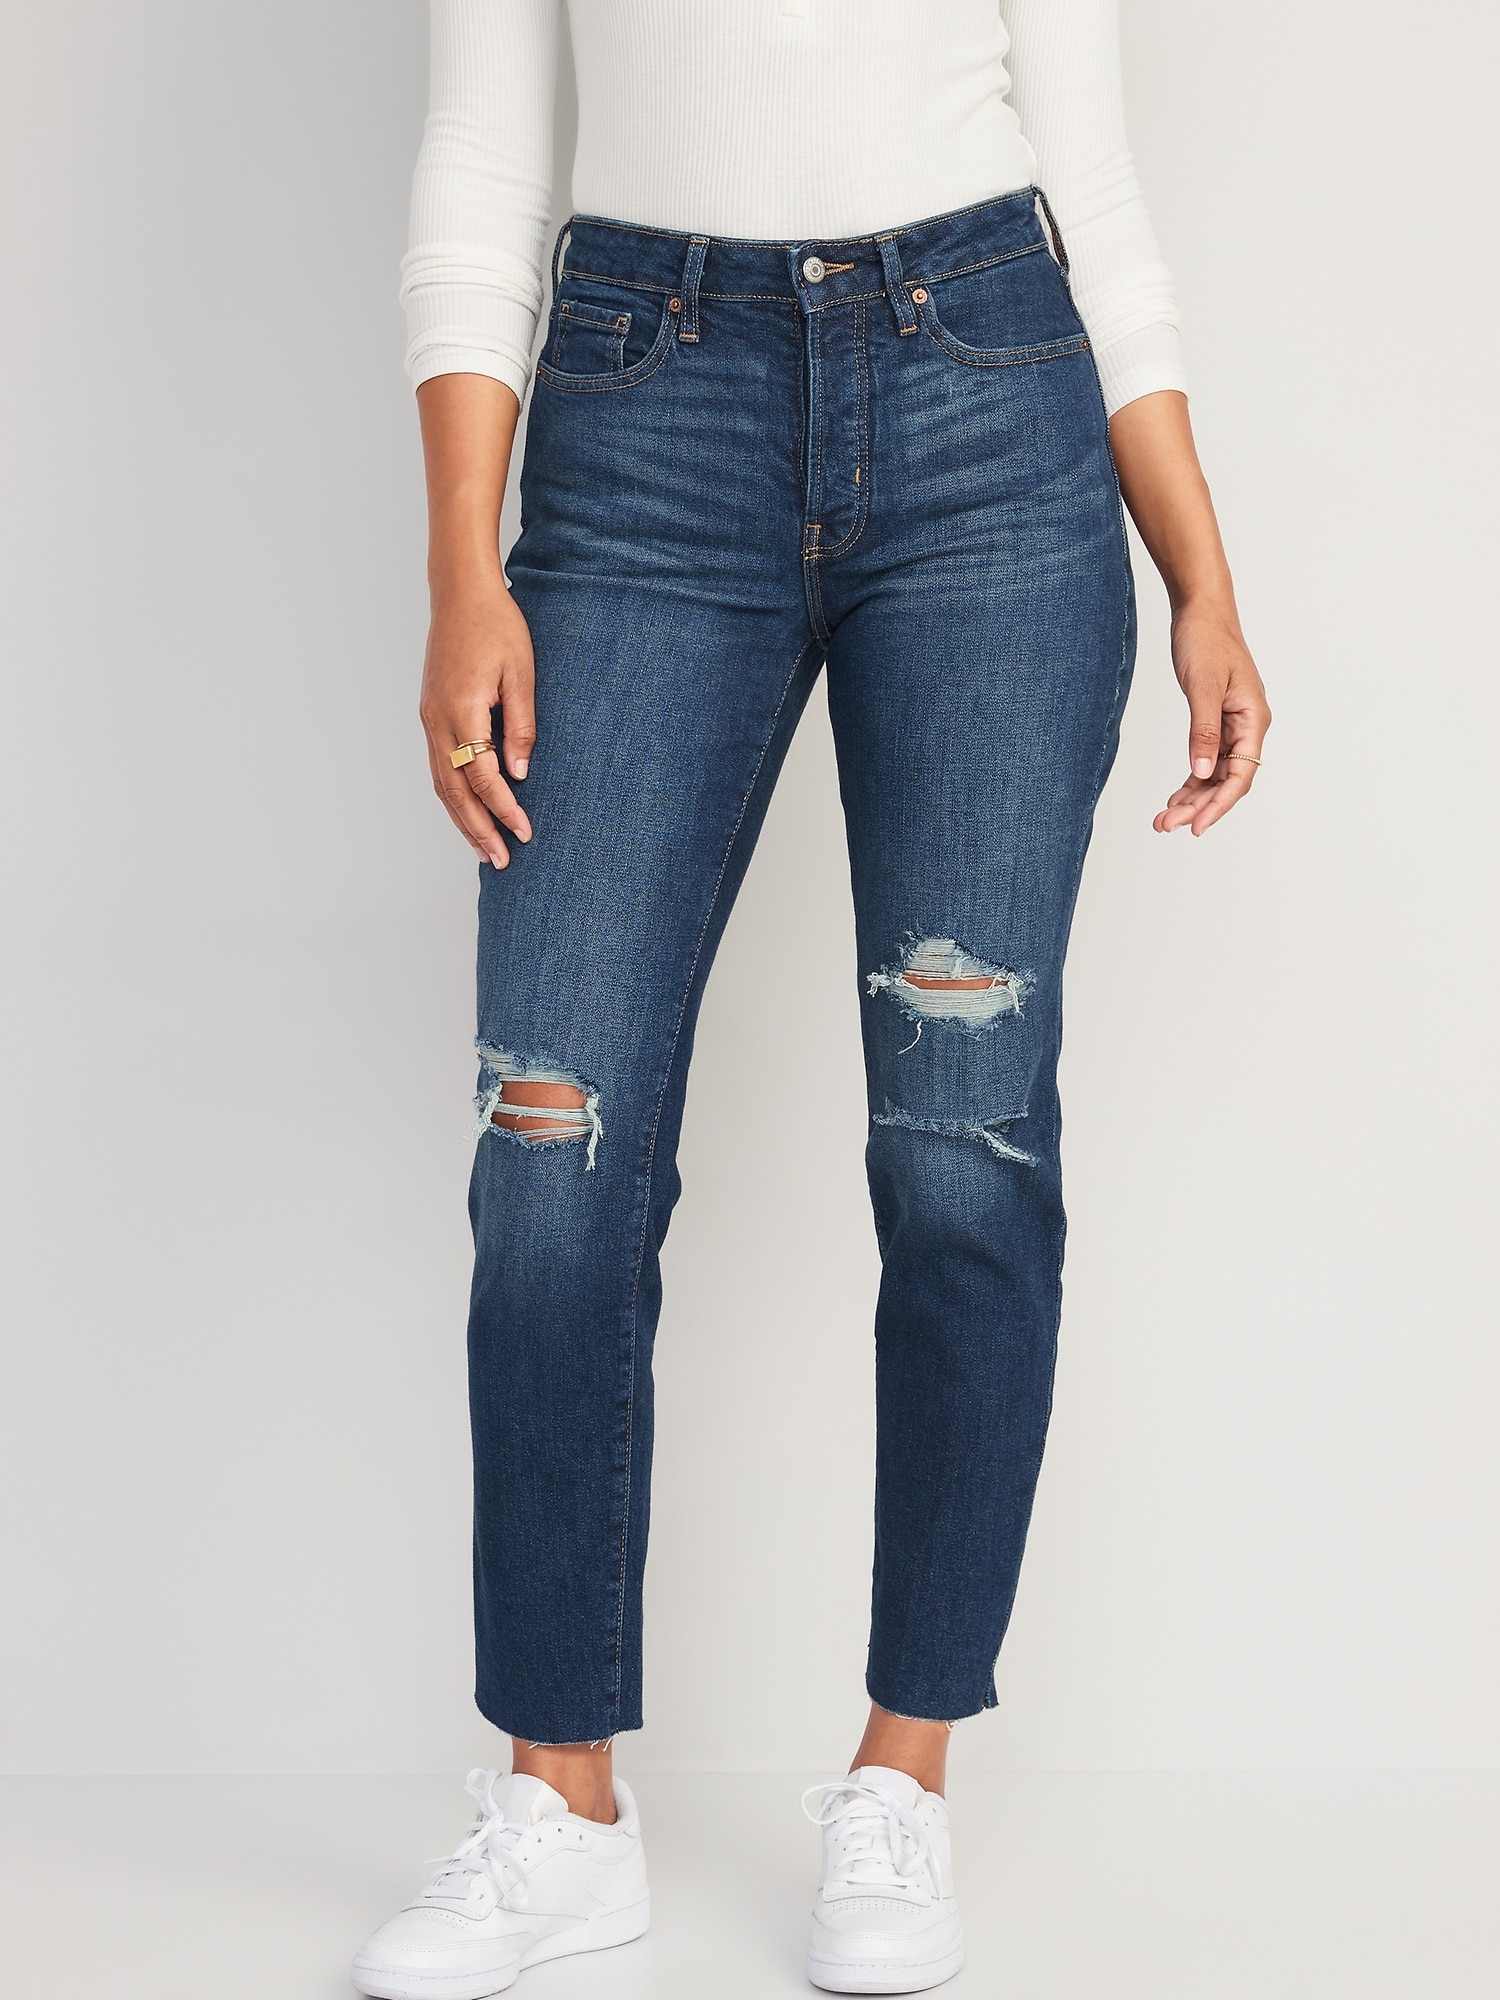 Frayed Hem Jeans for Women